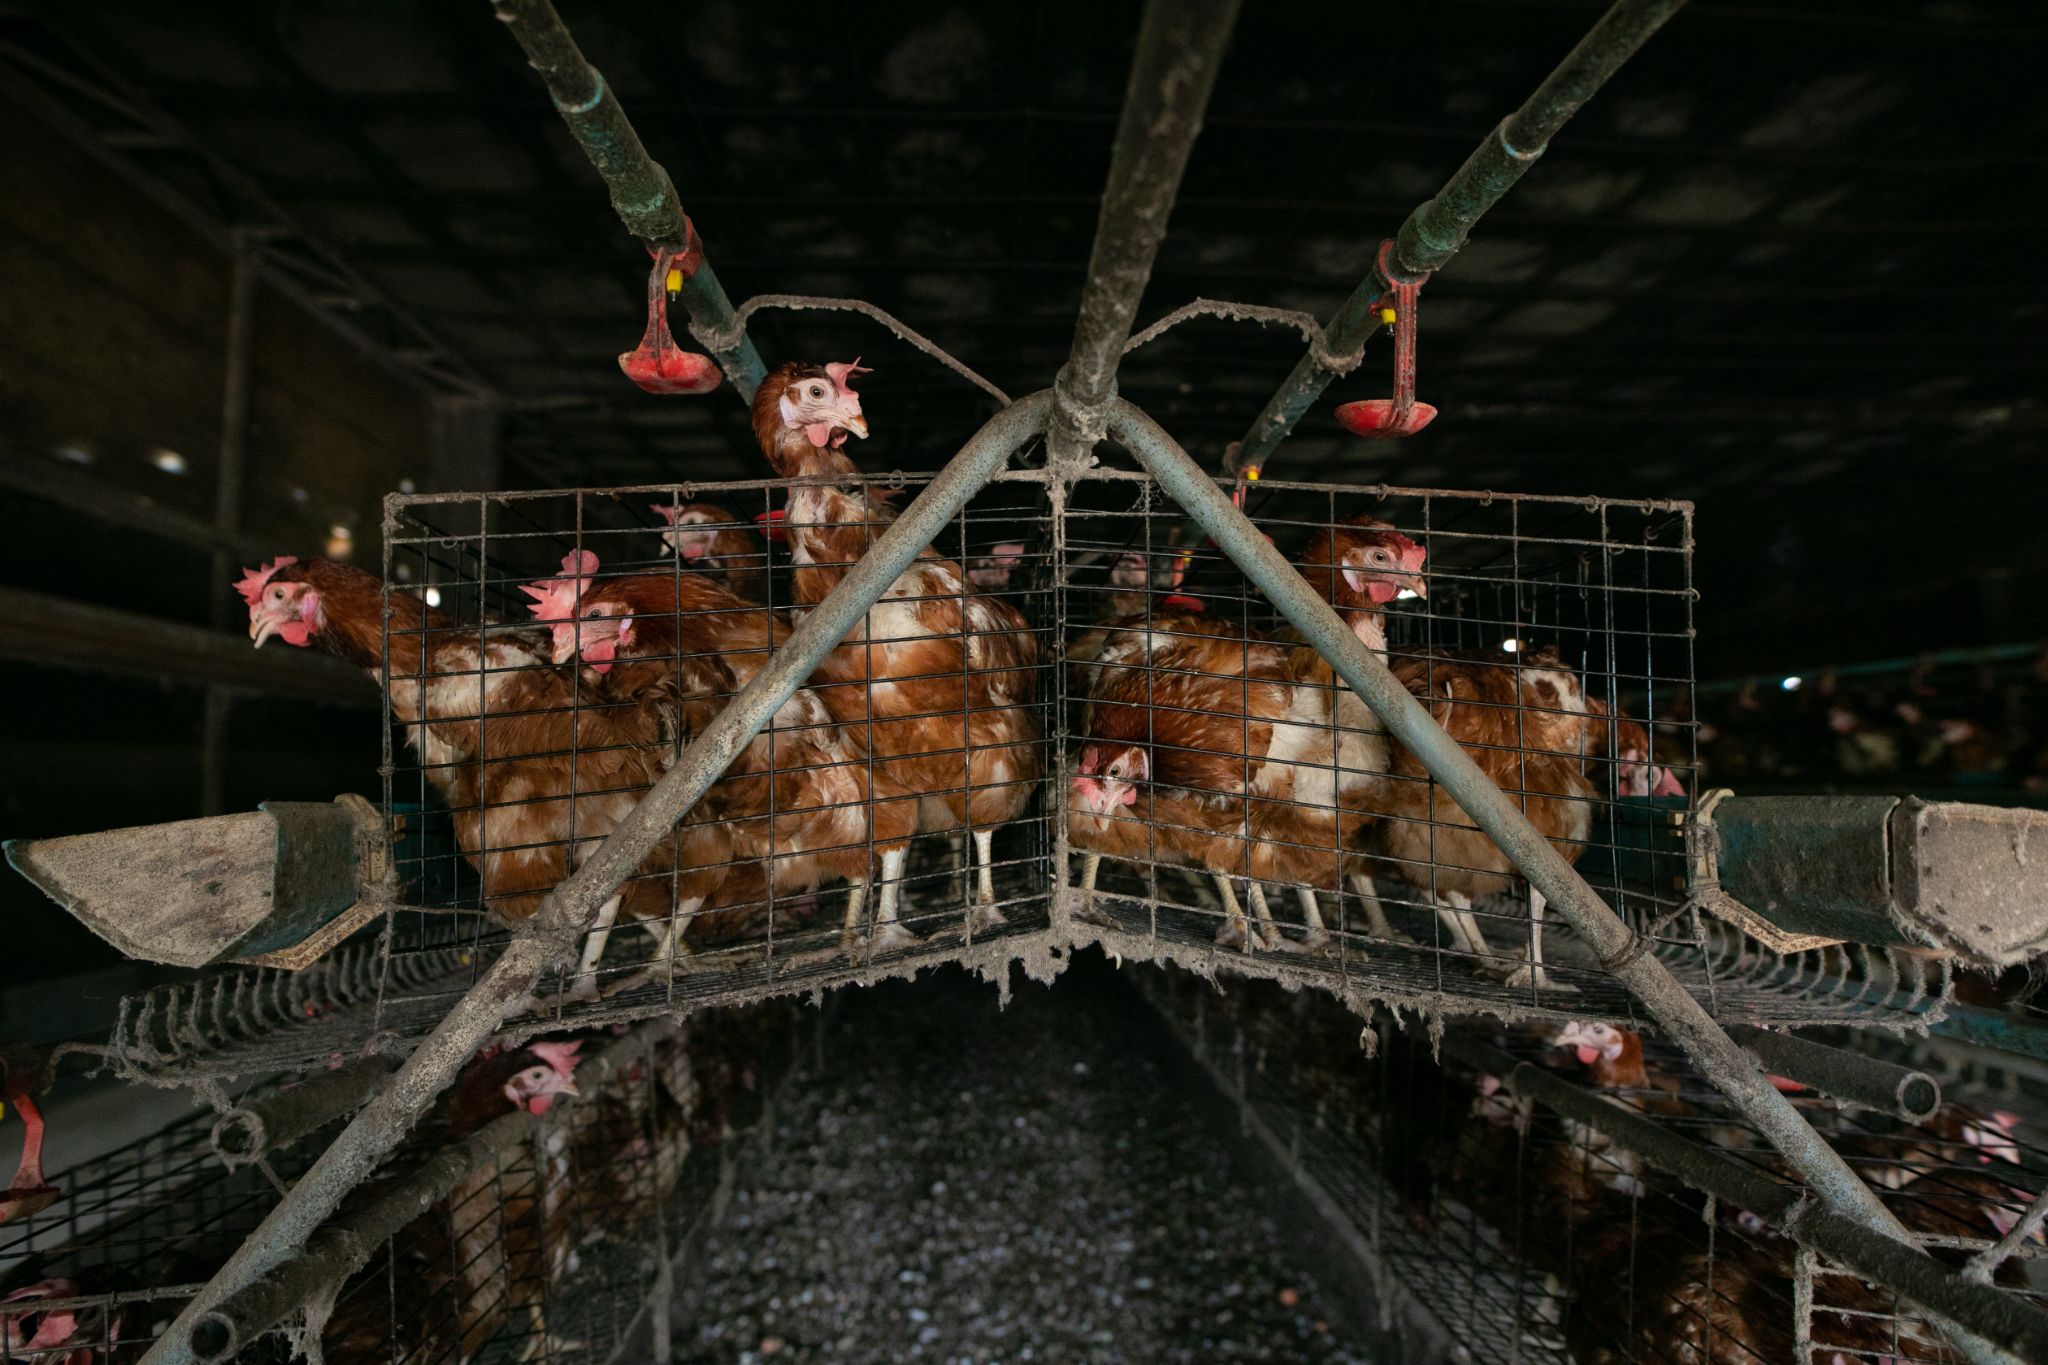 ผลสำรวจชี้ 70% ของบริษัทในอุตสาหกรรมอาหารกำลังเปลี่ยนไปใช้ไข่ไก่ปลอดกรง